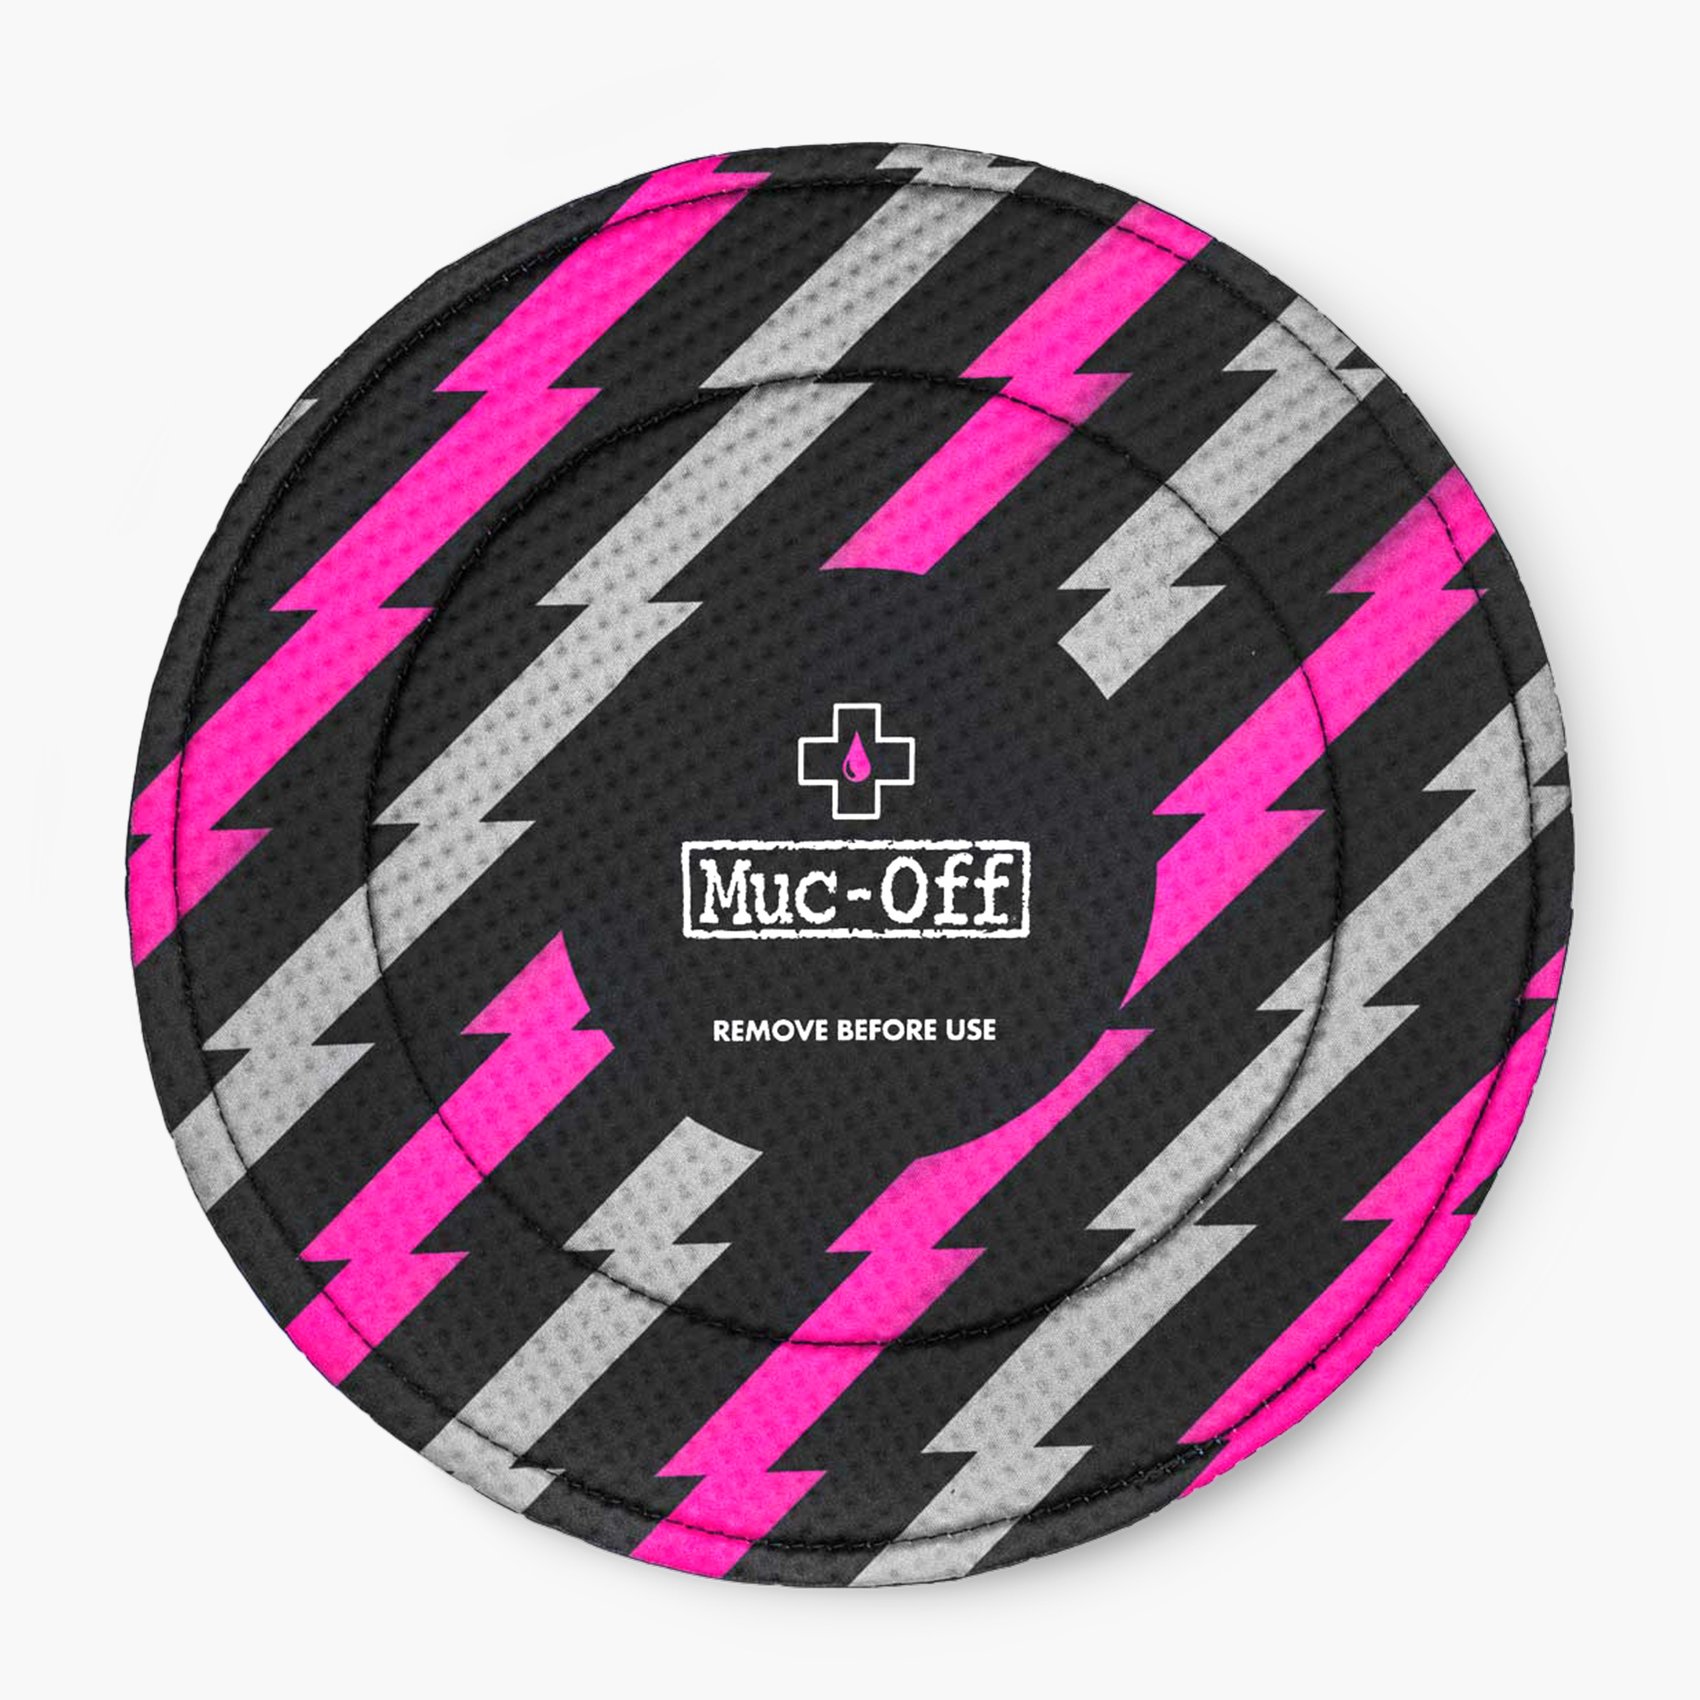 Tấm Bảo Vệ Thắng Đĩa Muc Off Disc Brake Cover (1 bộ 2 tấm)